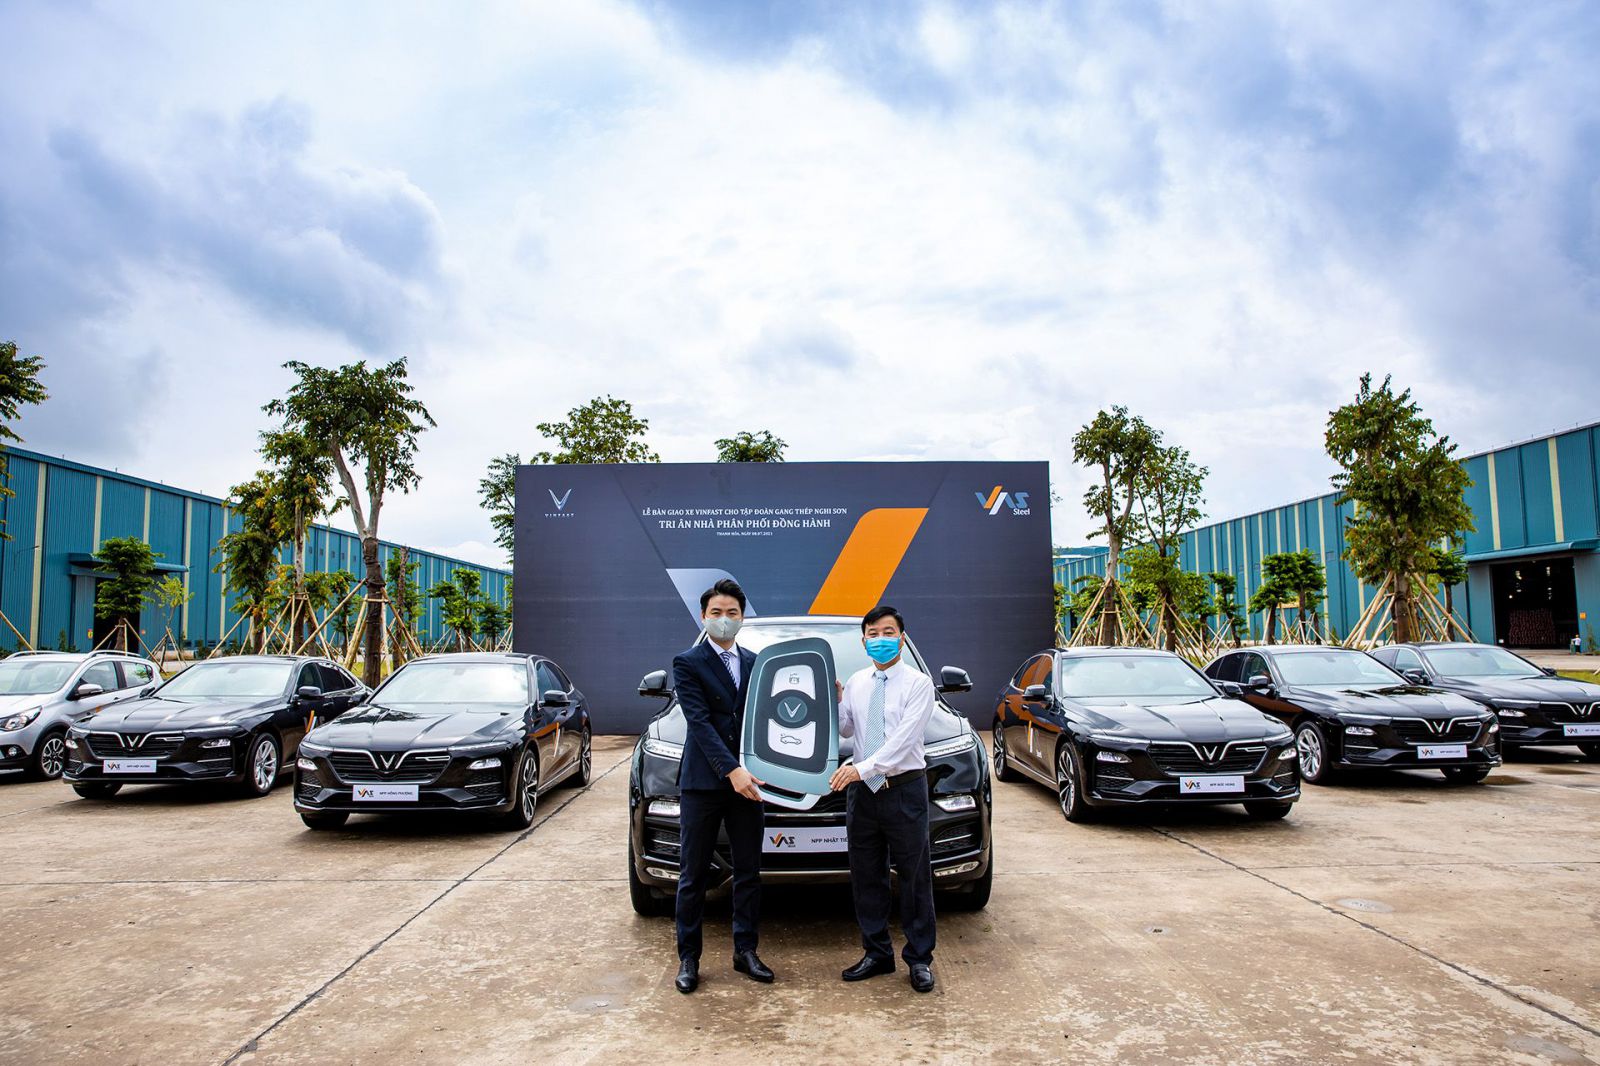 Sau các đối tác lớn như BIDV, Techcombank, PG Bank…, VAS là doanh nghiệp tiếp theo đặt niềm tin vào thương hiệu “ô tô quốc dân” của Việt Nam. Lãnh đạo của VAS cho biết họ đánh giá cao chất lượng sản phẩm, giá cả hợp lý và dịch vụ hậu mãi đẳng cấp vượt trội của VinFast.